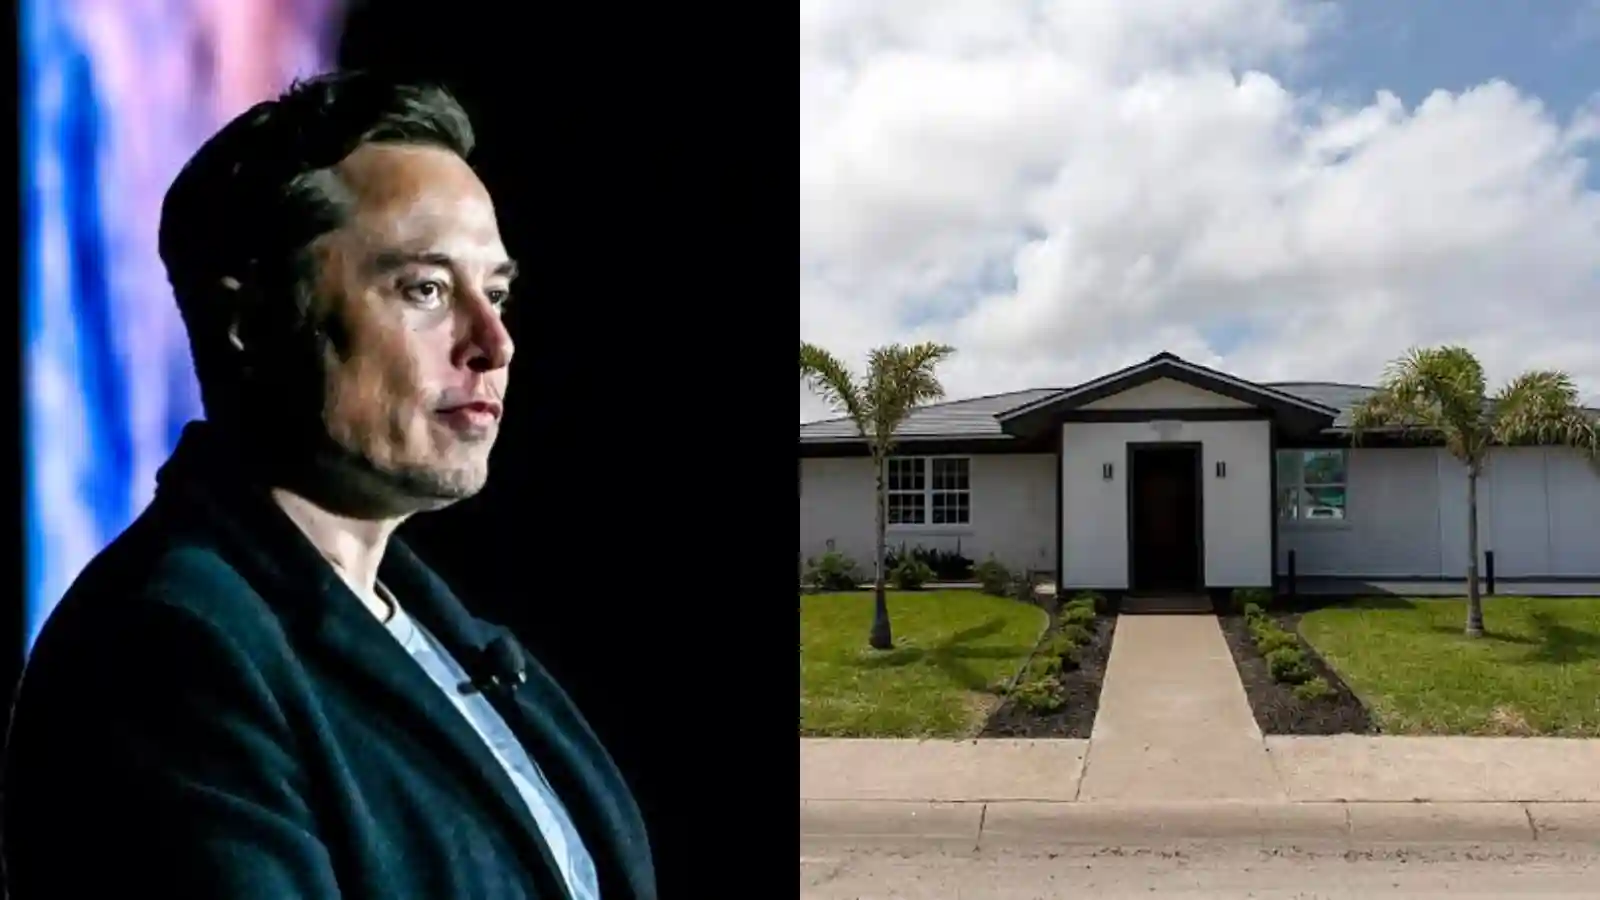 Elon Musk's house in Texas